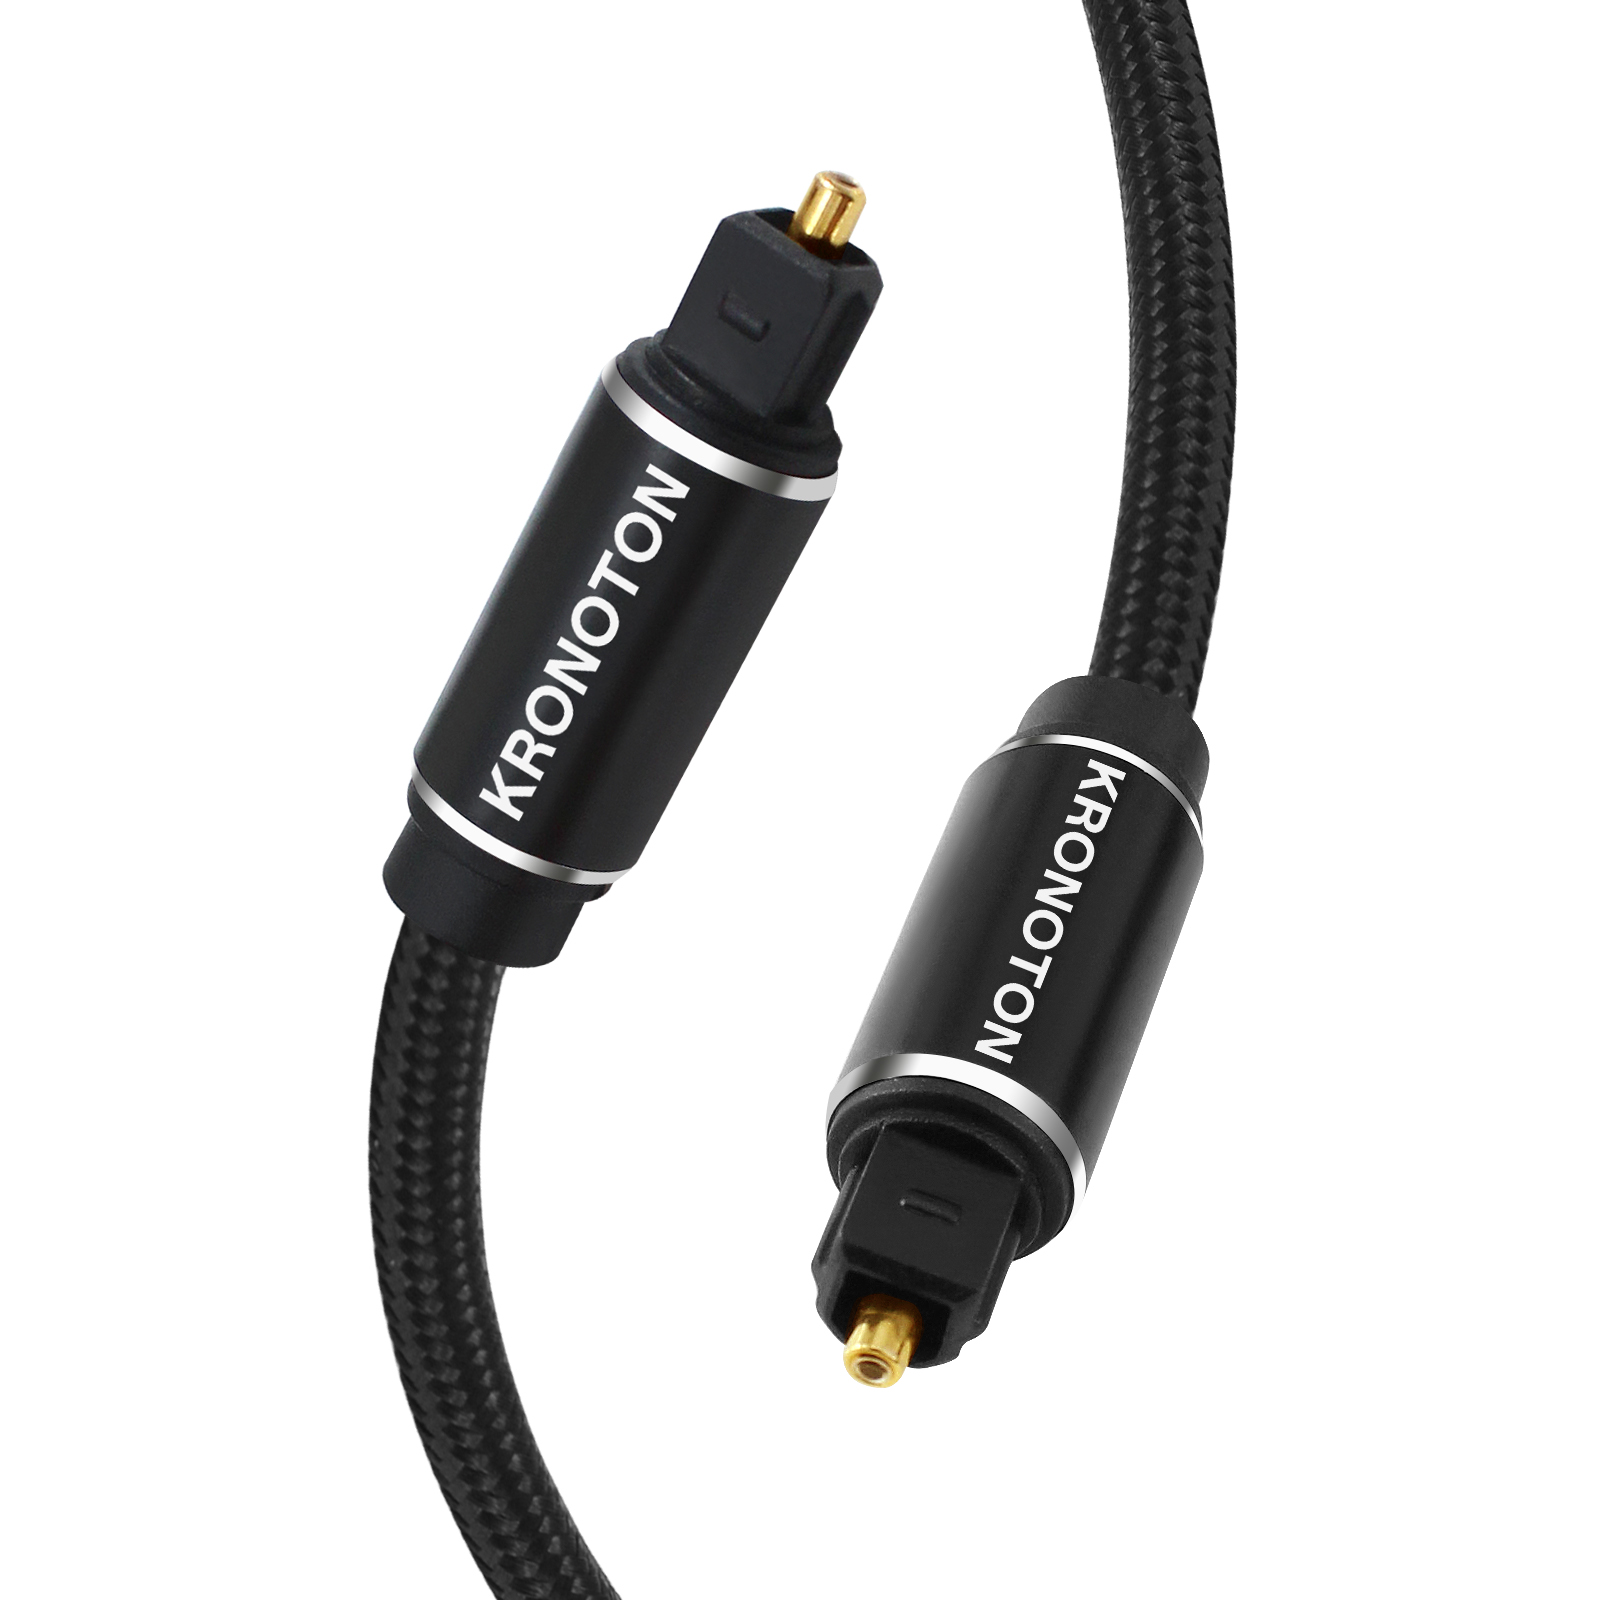 1,5 Premium m Optical, Digital Audio Lichtleiter HDSX Toslink Kabel, KRONOTON Kabel